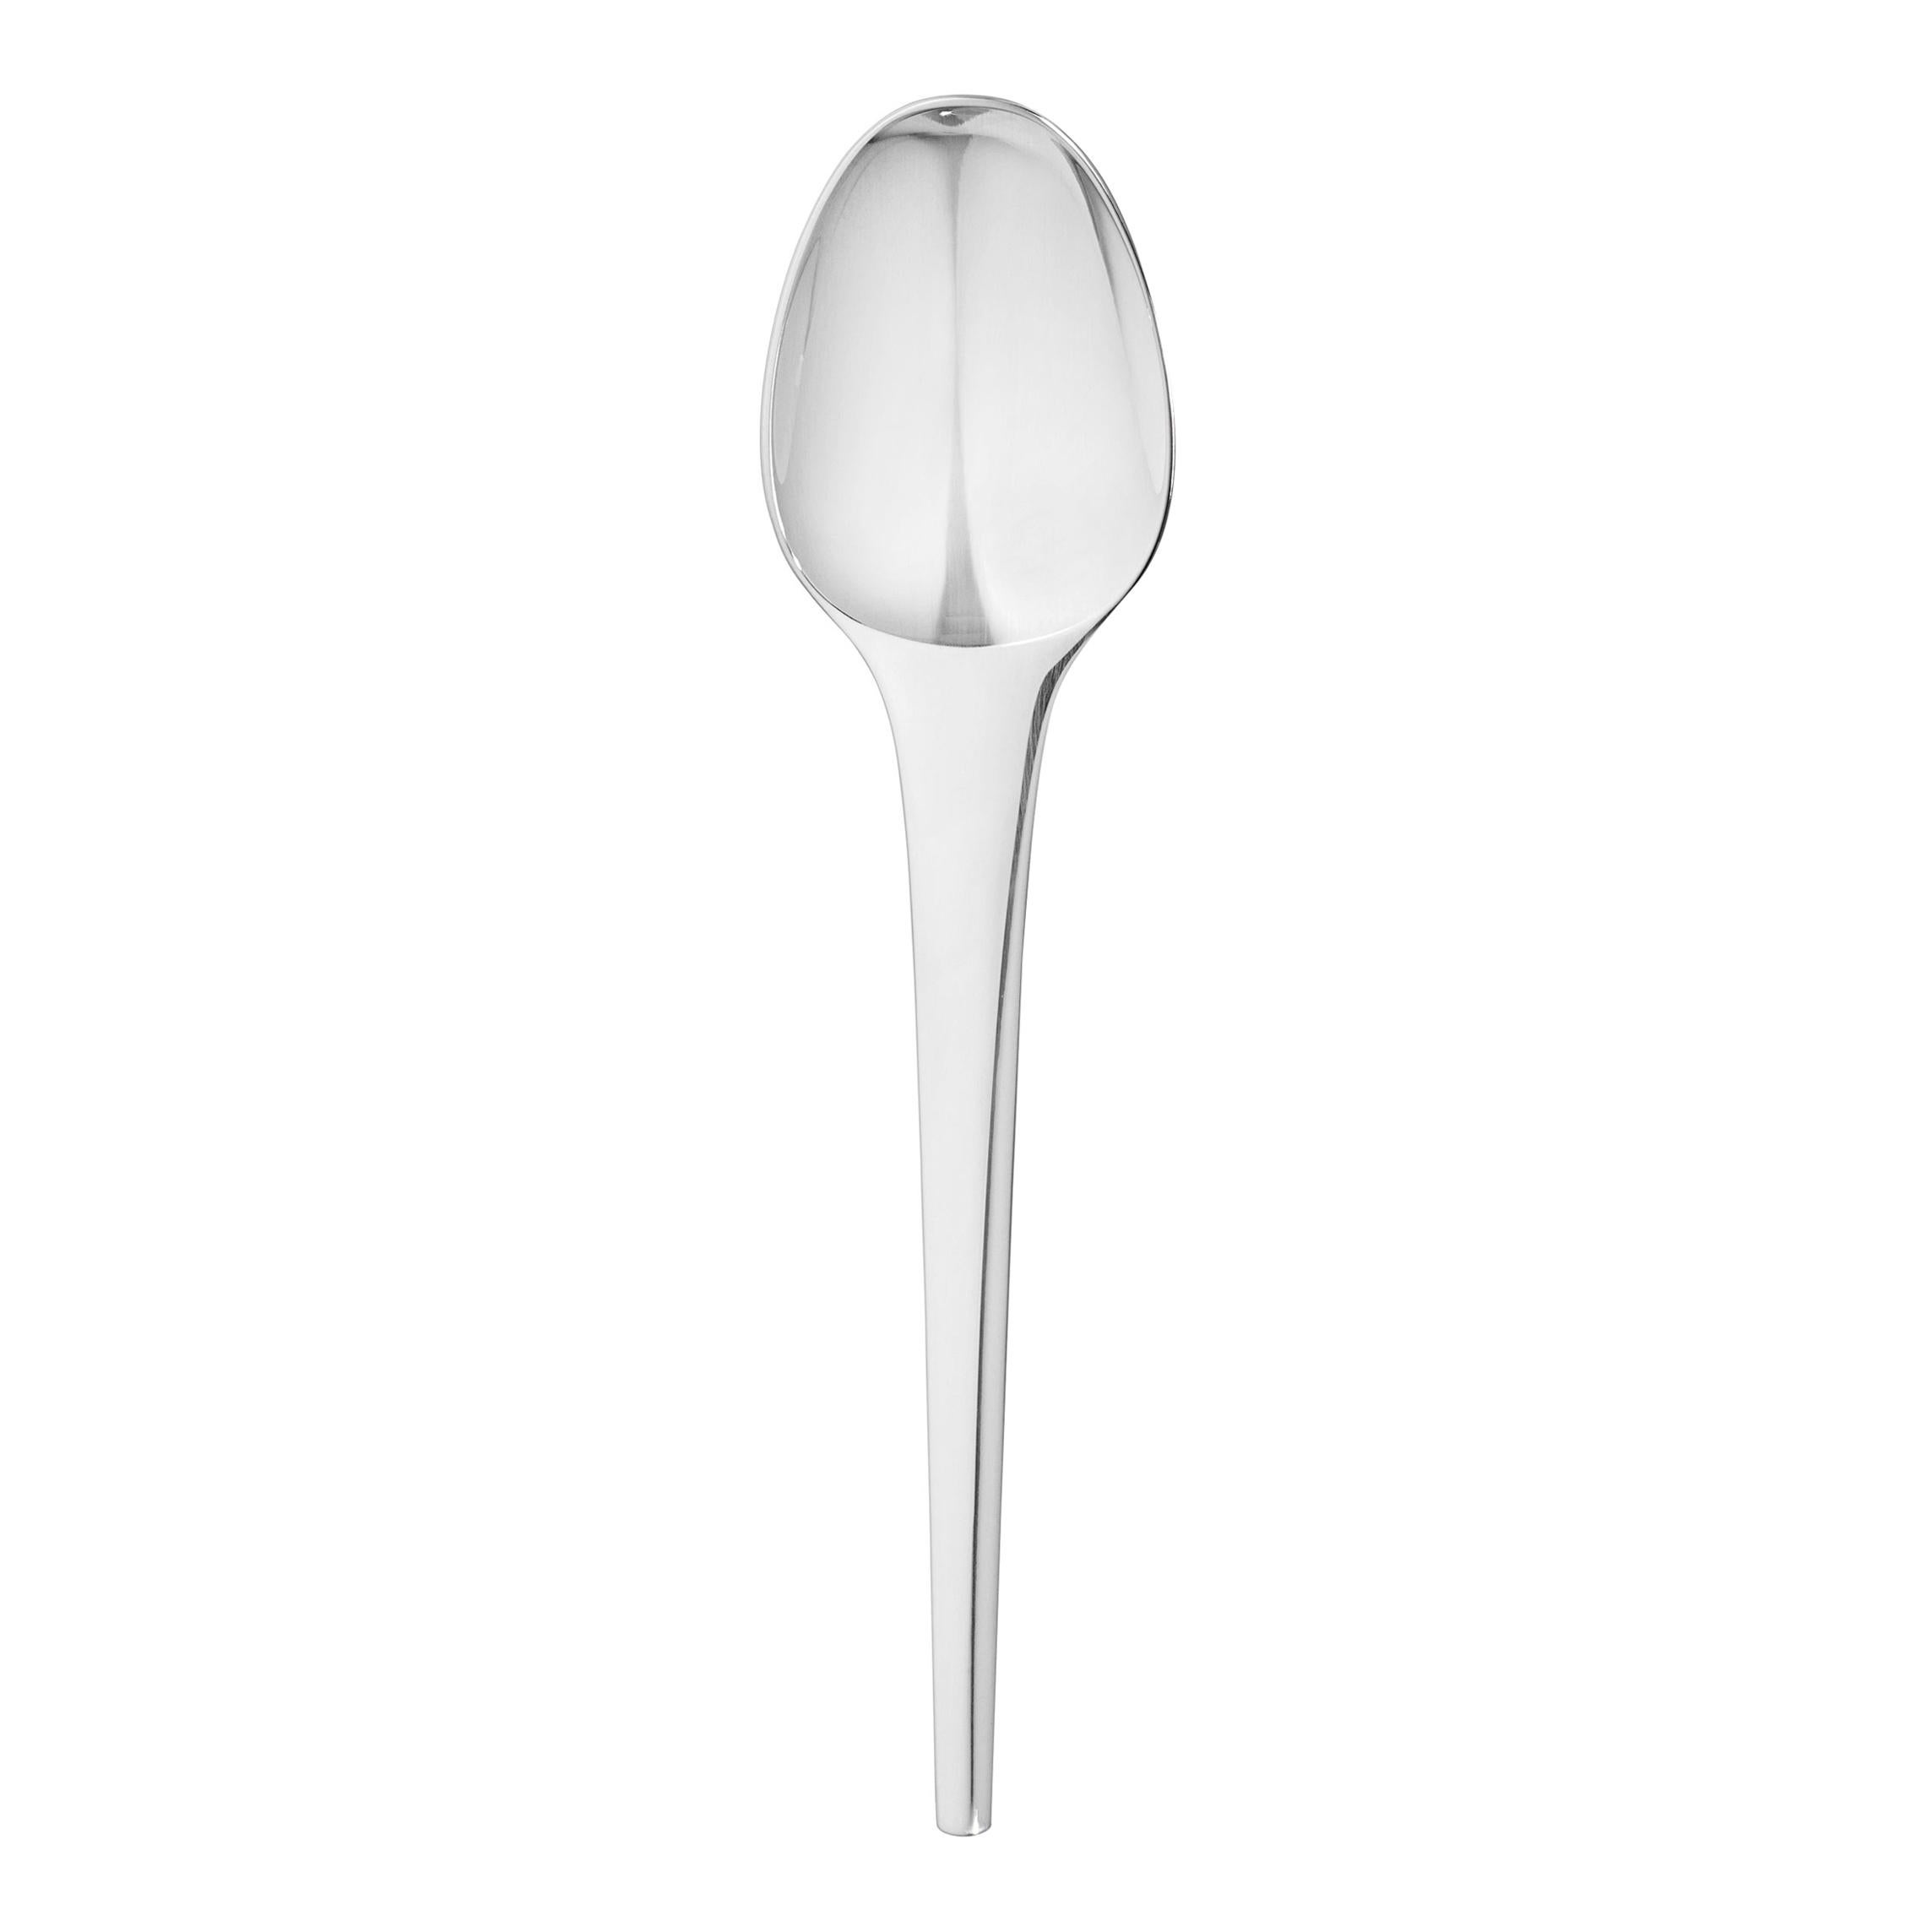 Henning Koppel Sterling Silver Caravel Dinner Spoon for Georg Jensen For Sale